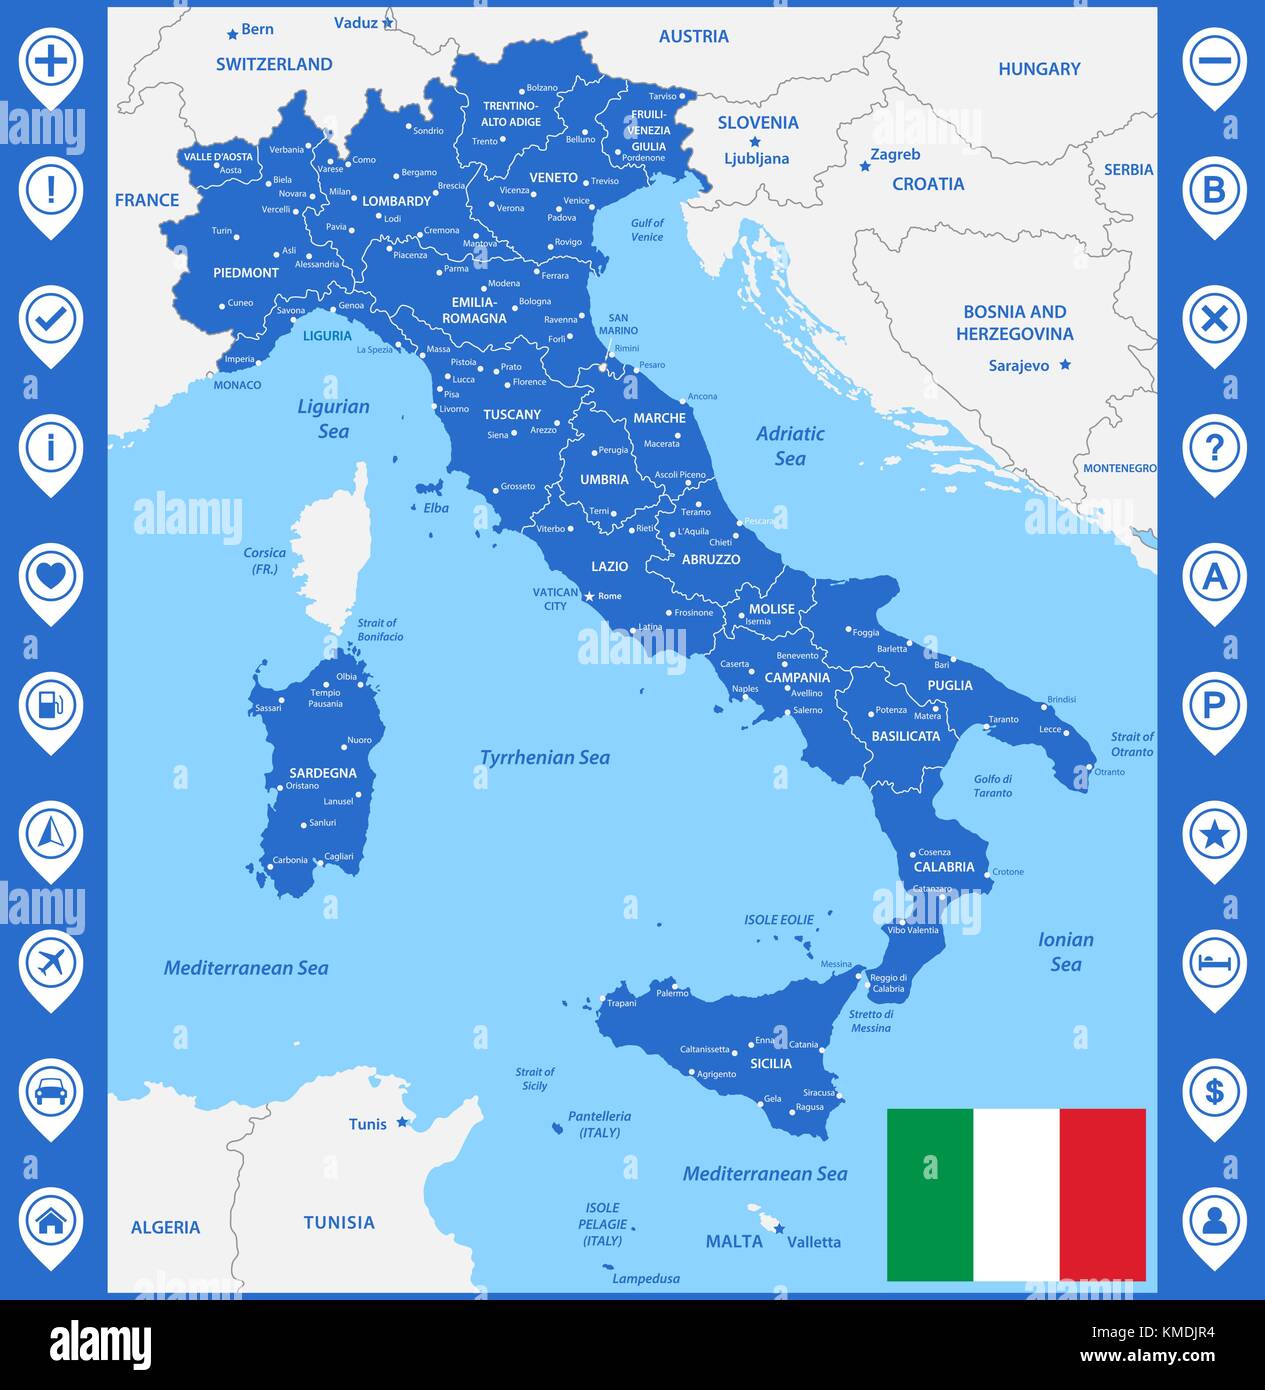 La carte détaillée de l'Italie avec les régions ou États et villes, capitale. avec des objets de la mer et les îles. et des parties de pays voisins. L'italien na Illustration de Vecteur